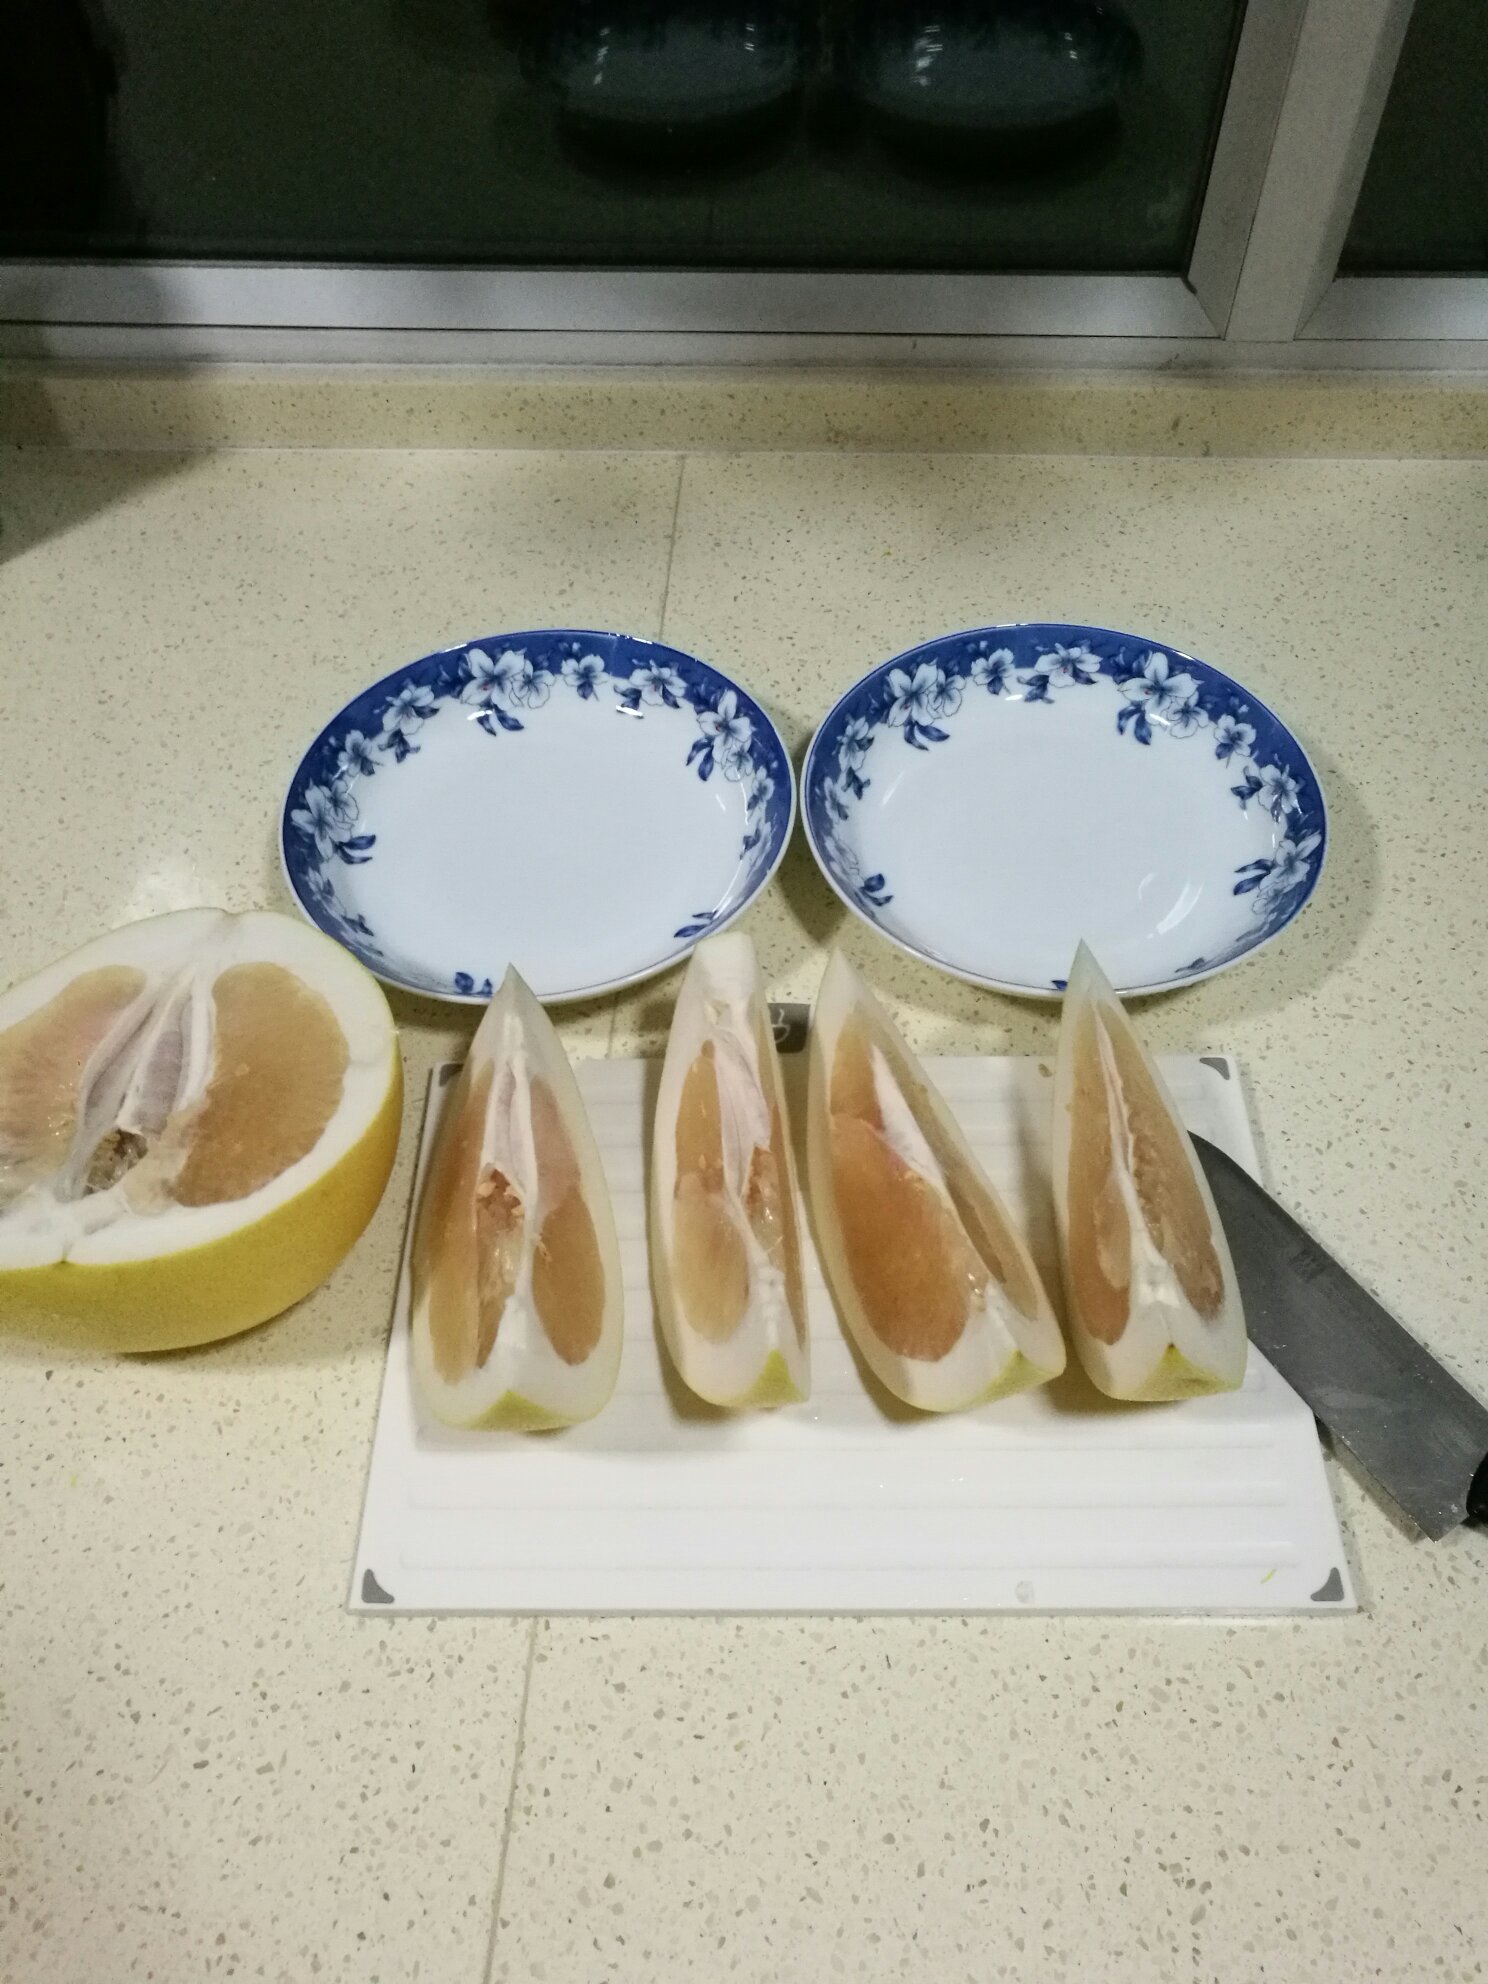 自制蜂蜜柚子茶的做法 步骤2